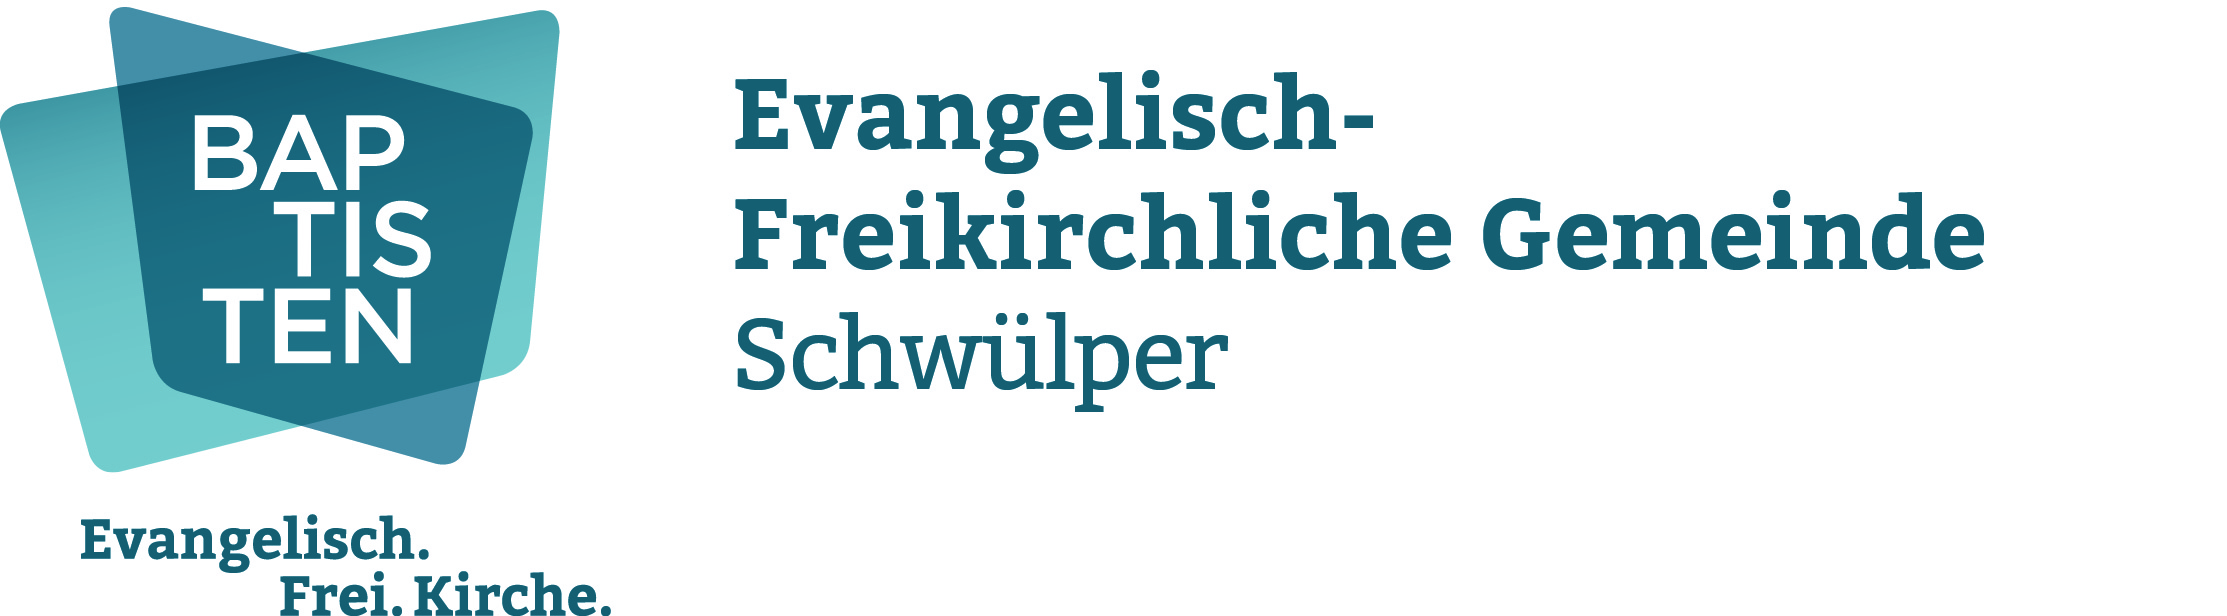 Evangelisch-Freikirchliche Gemeinde Schwülper